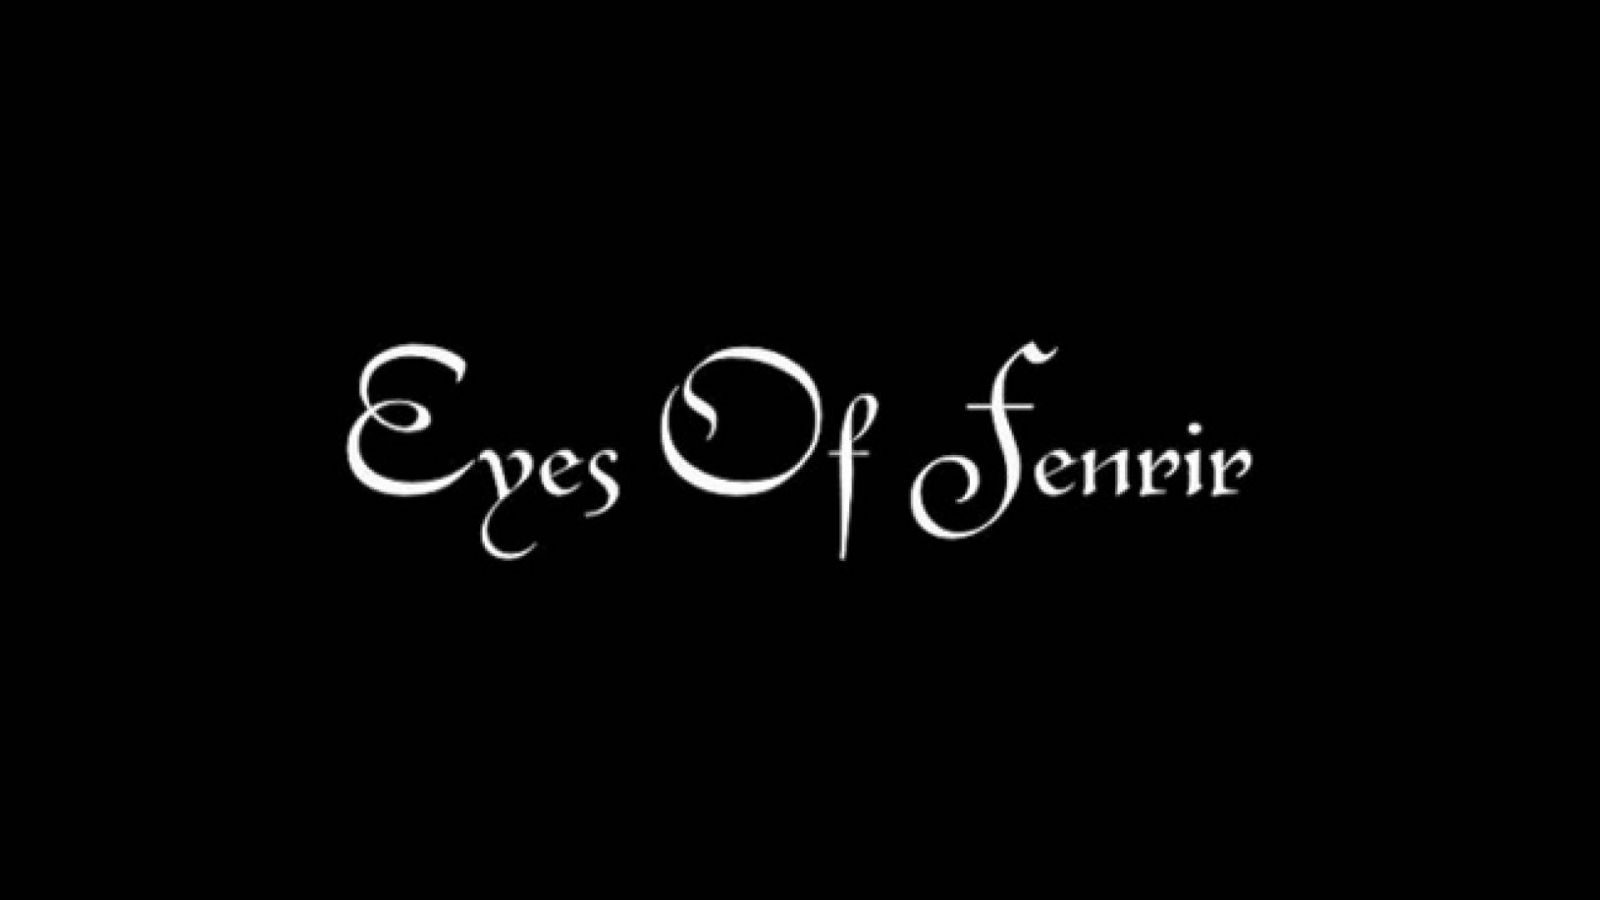 Eyes Of Fenrir © Eyes of Fenrir